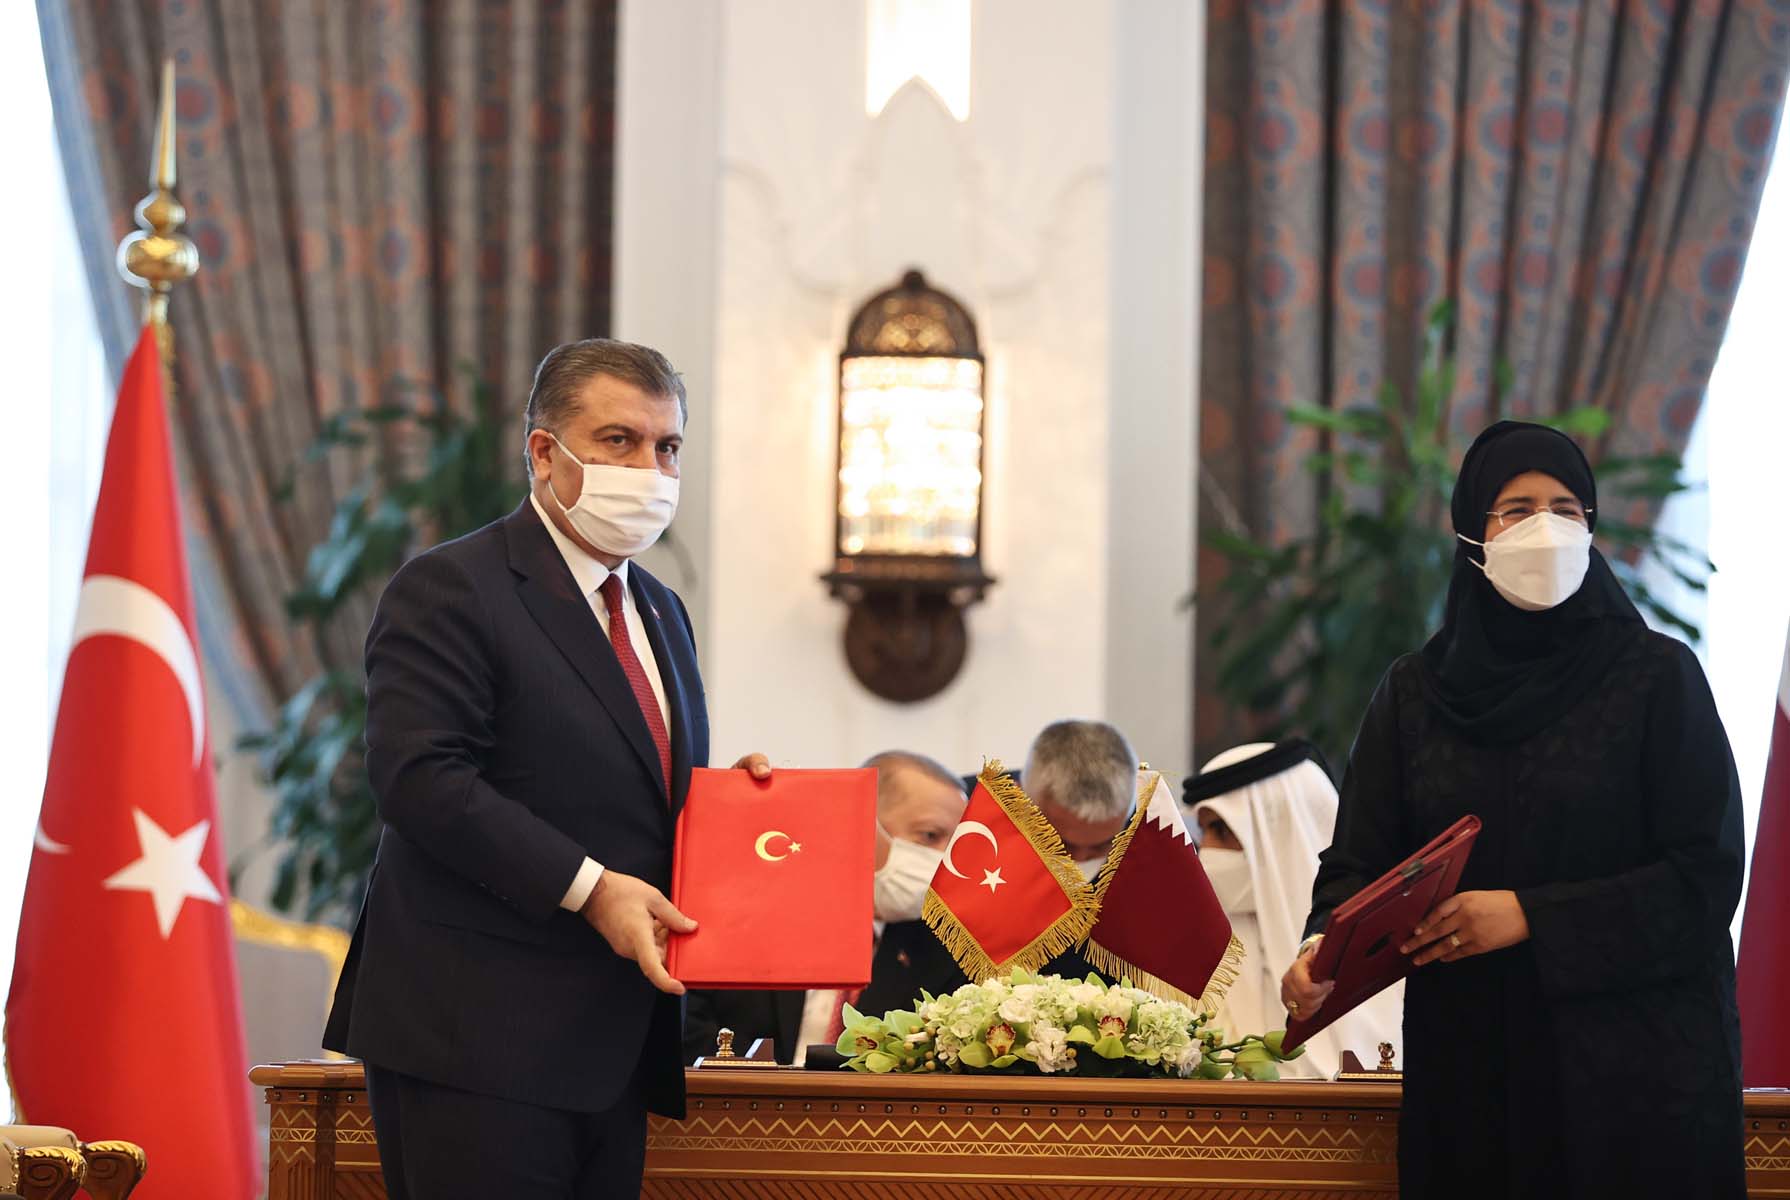 İşbirliği kuvvetleniyor! Türkiye ile Katar arasında 15 anlaşma imzalandı 